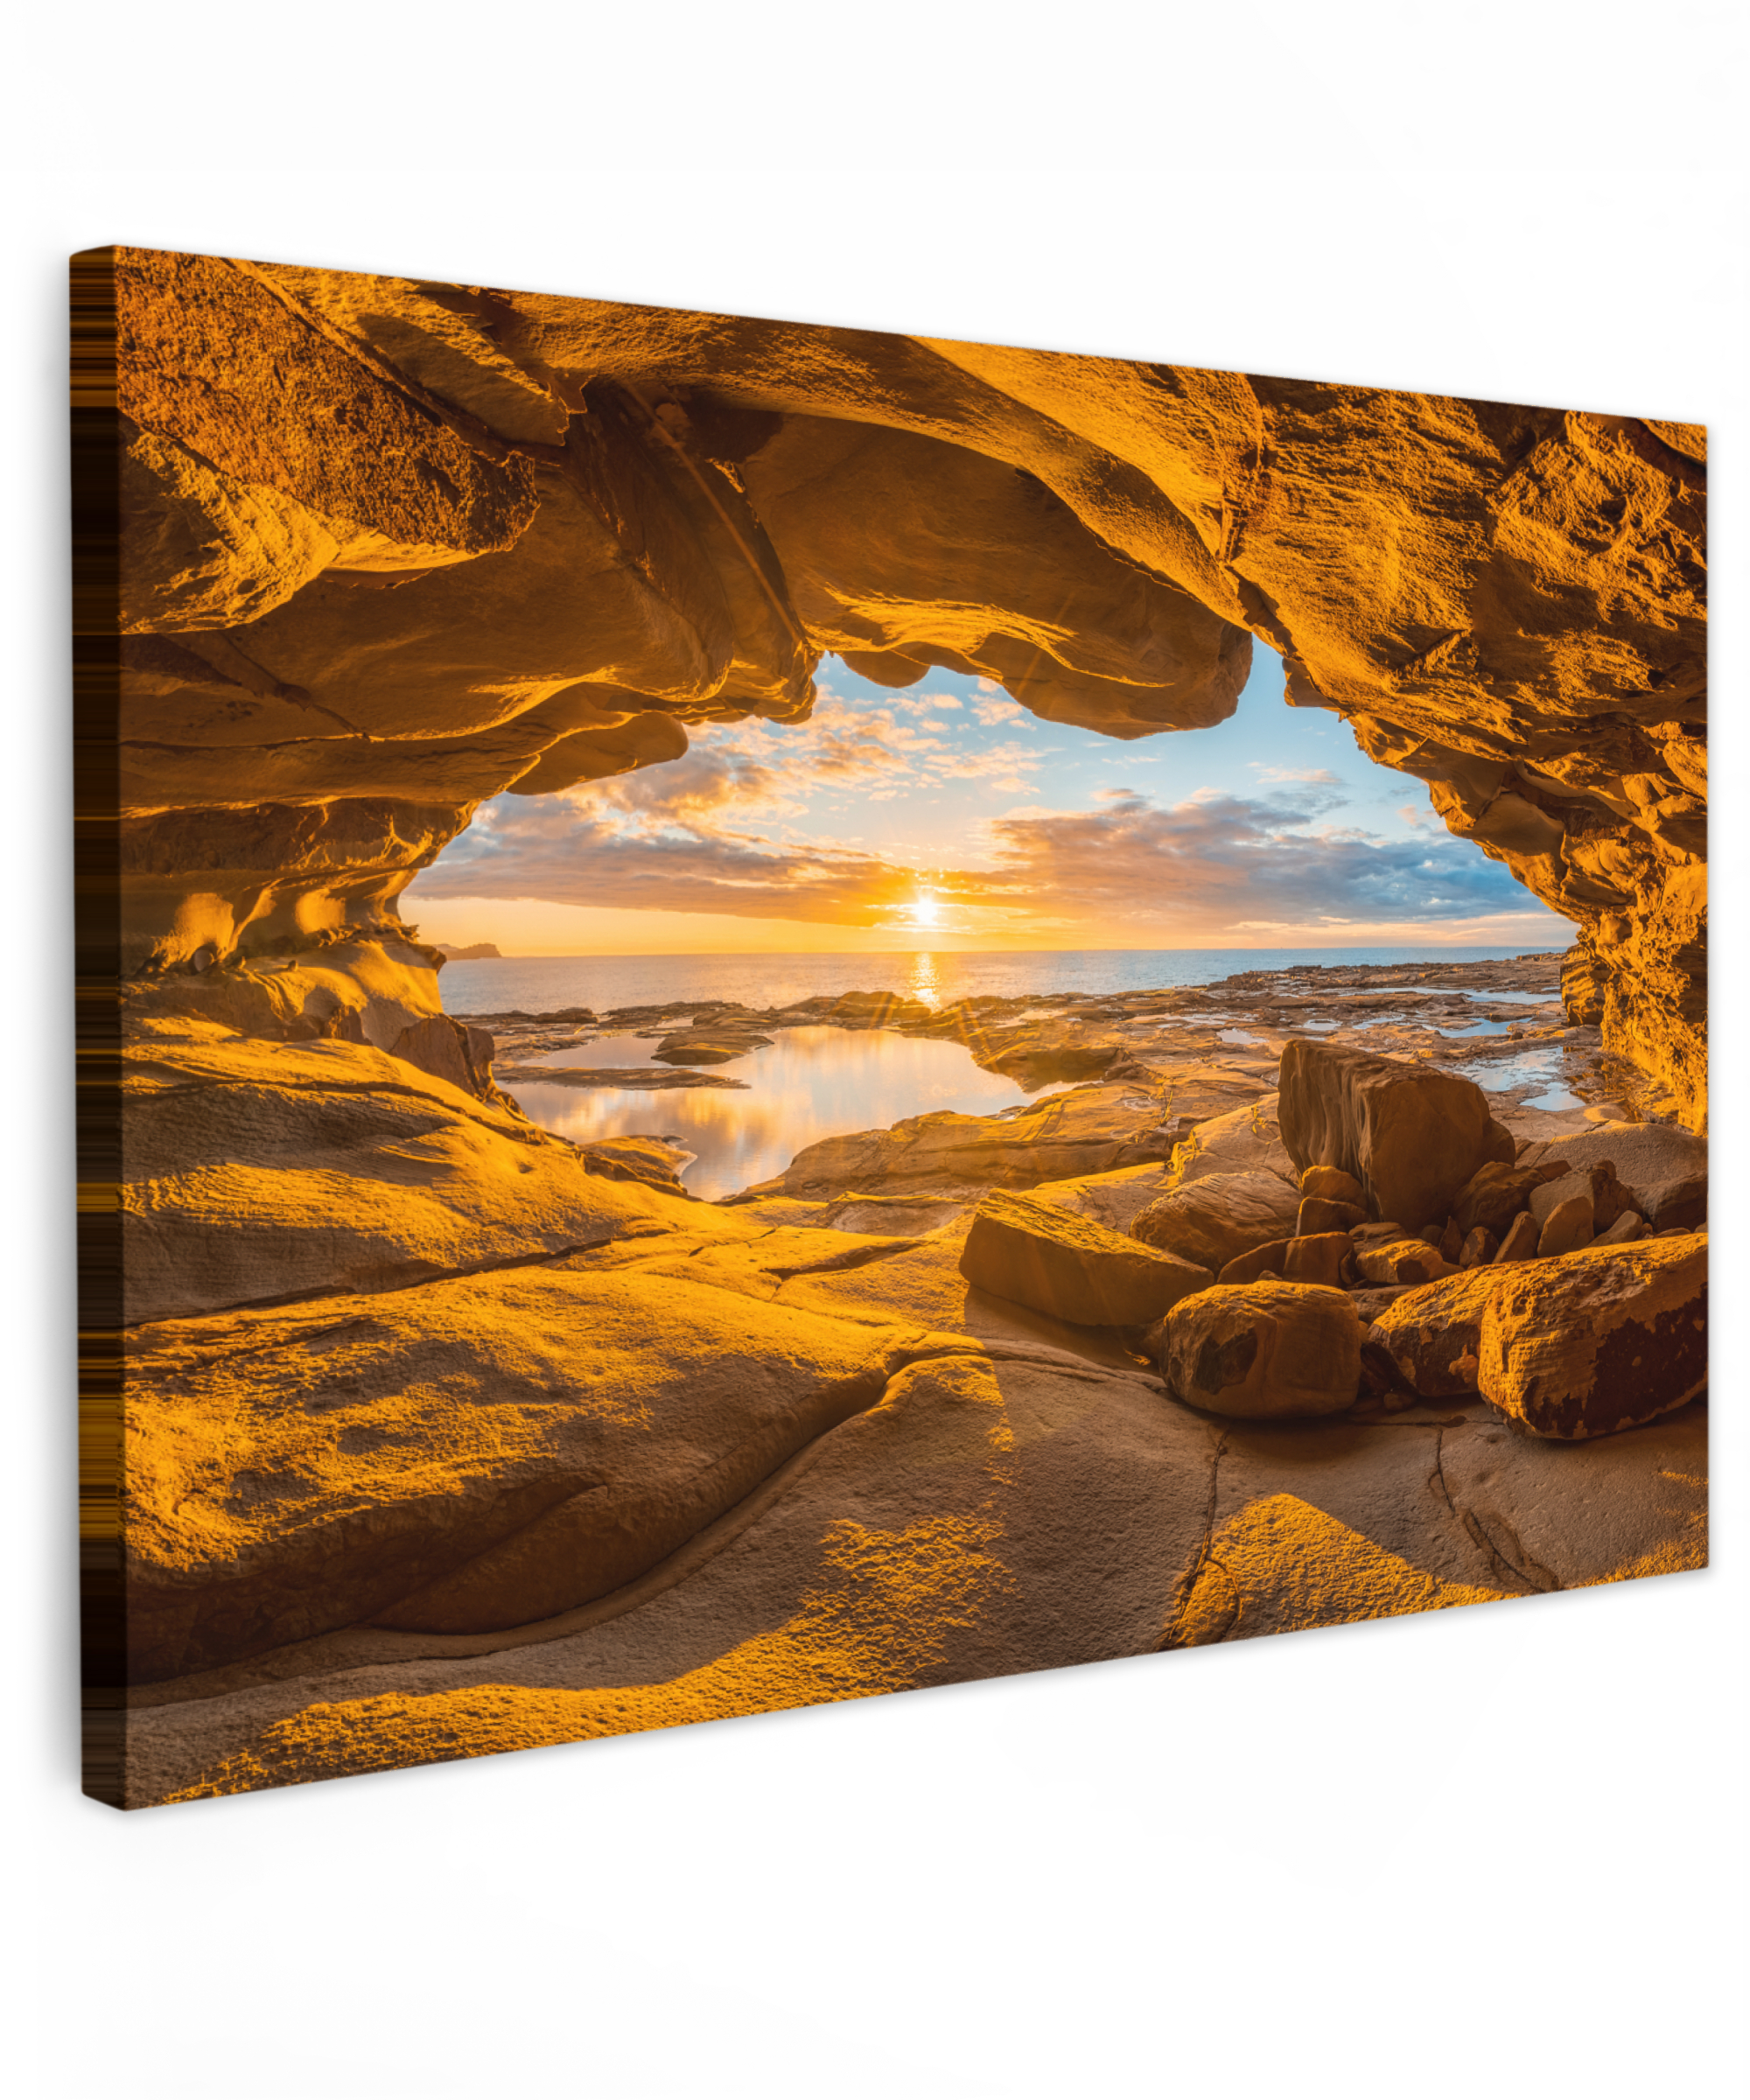 Tableau sur toile - Grotte - Mer - Horizon - Coucher de soleil